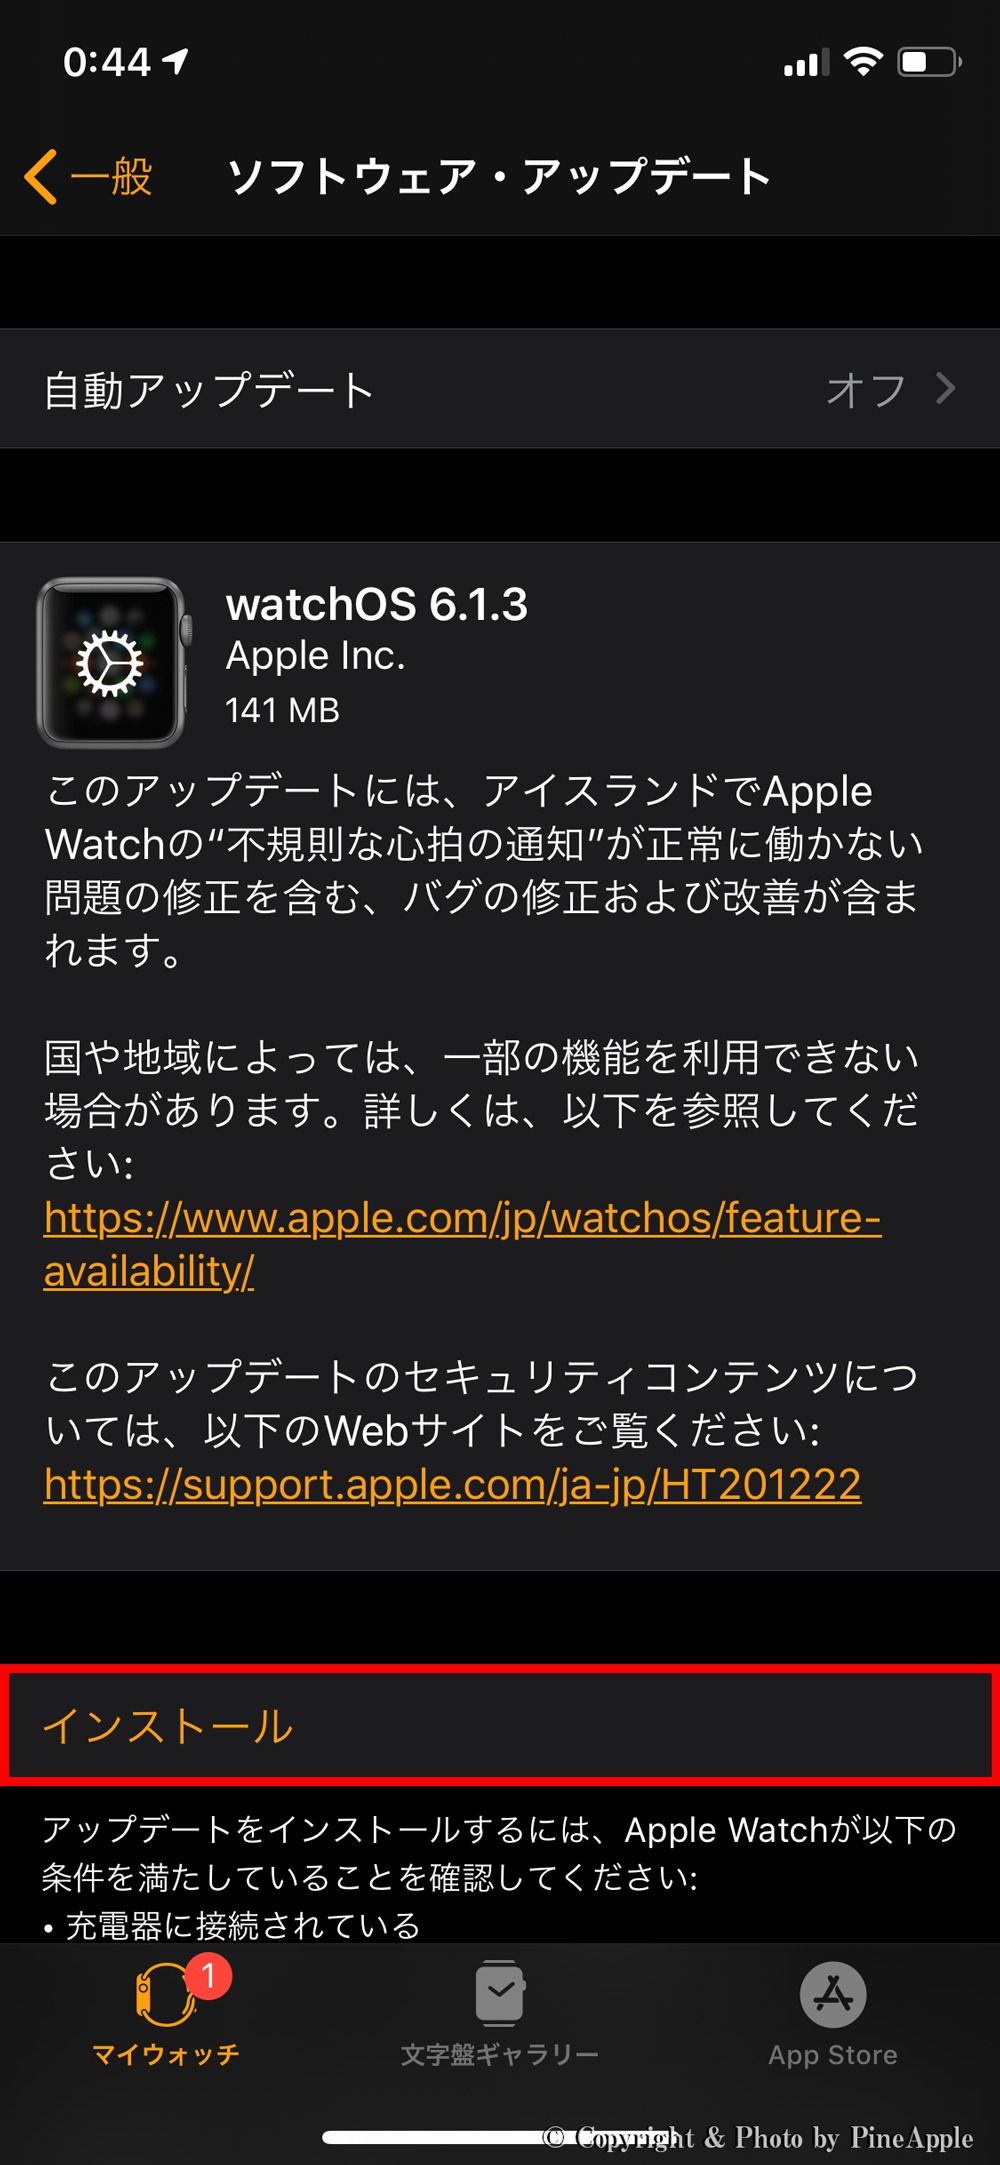 watchOS 6.1.3